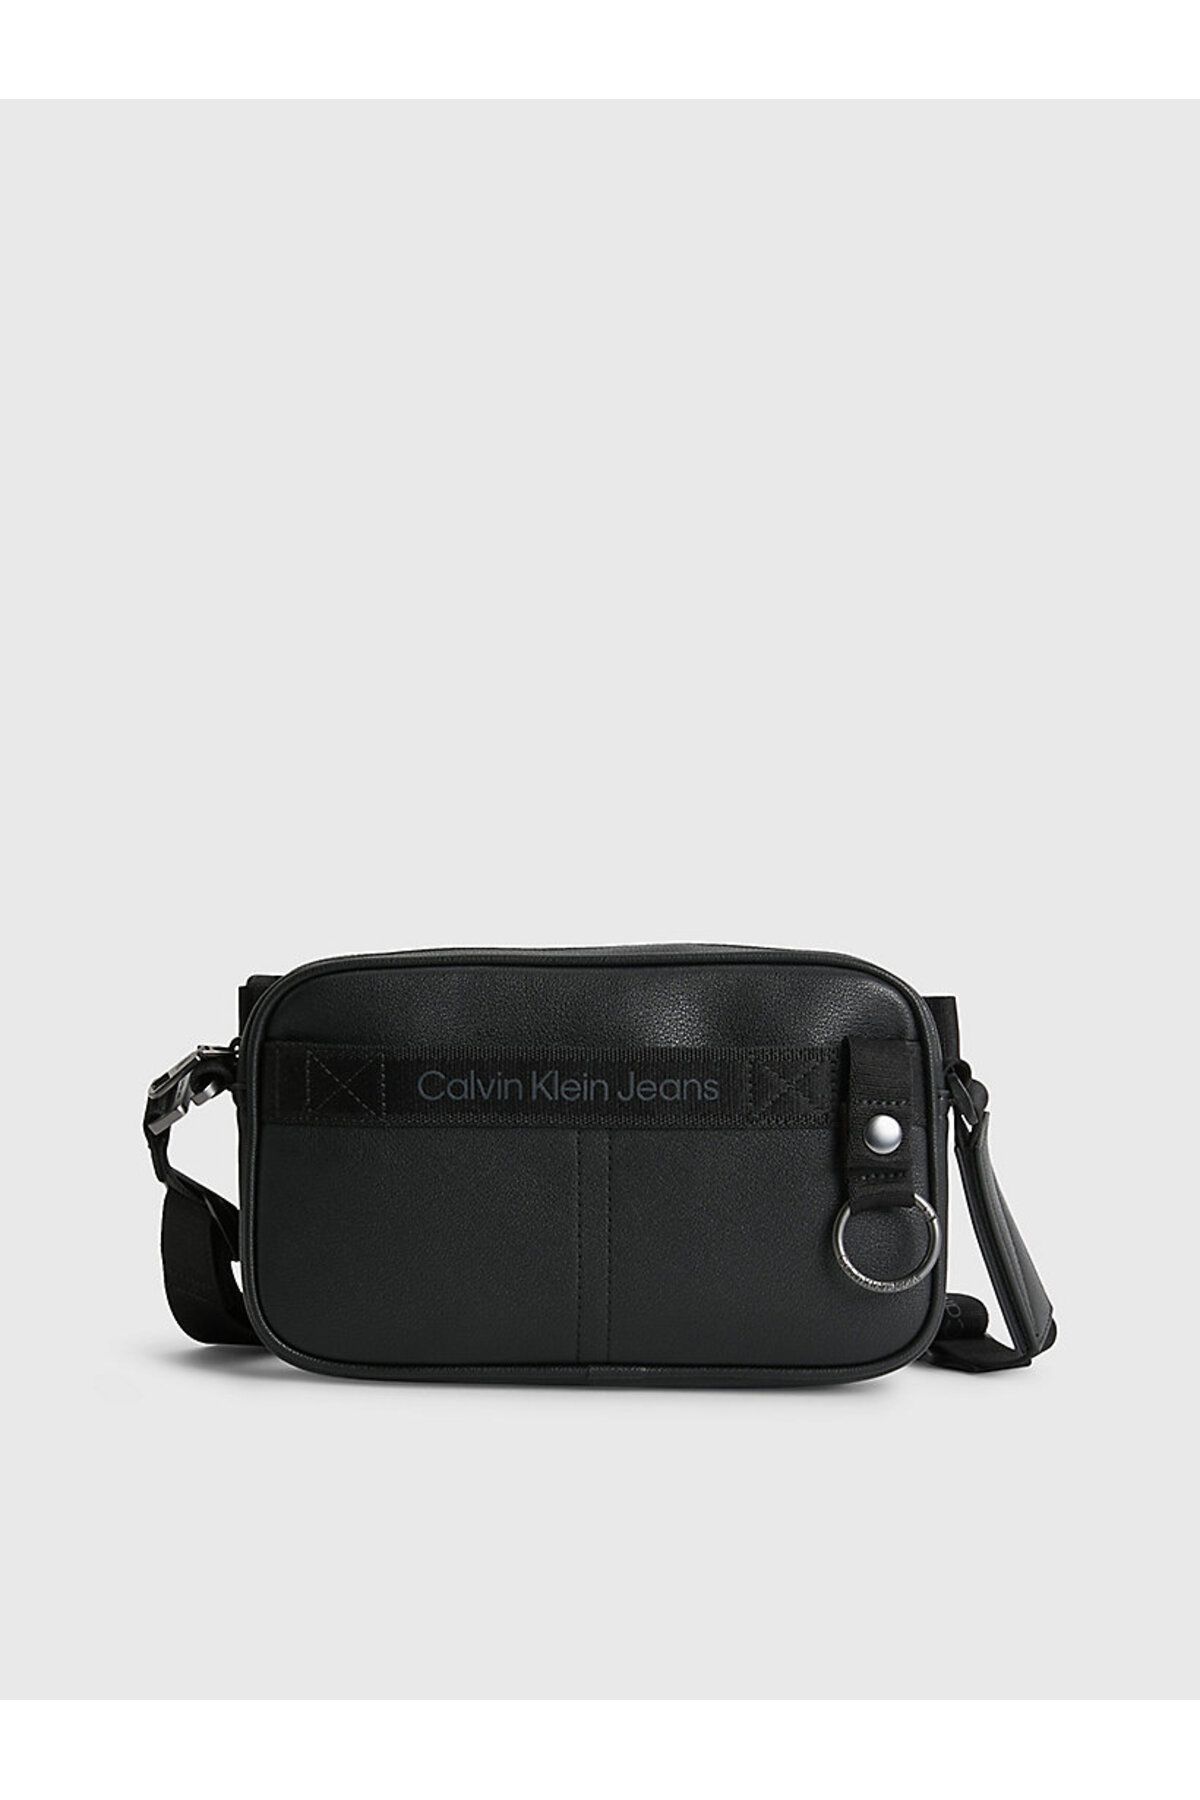 Calvin Klein ULTRALIGHT CAMERA BAG22 PU